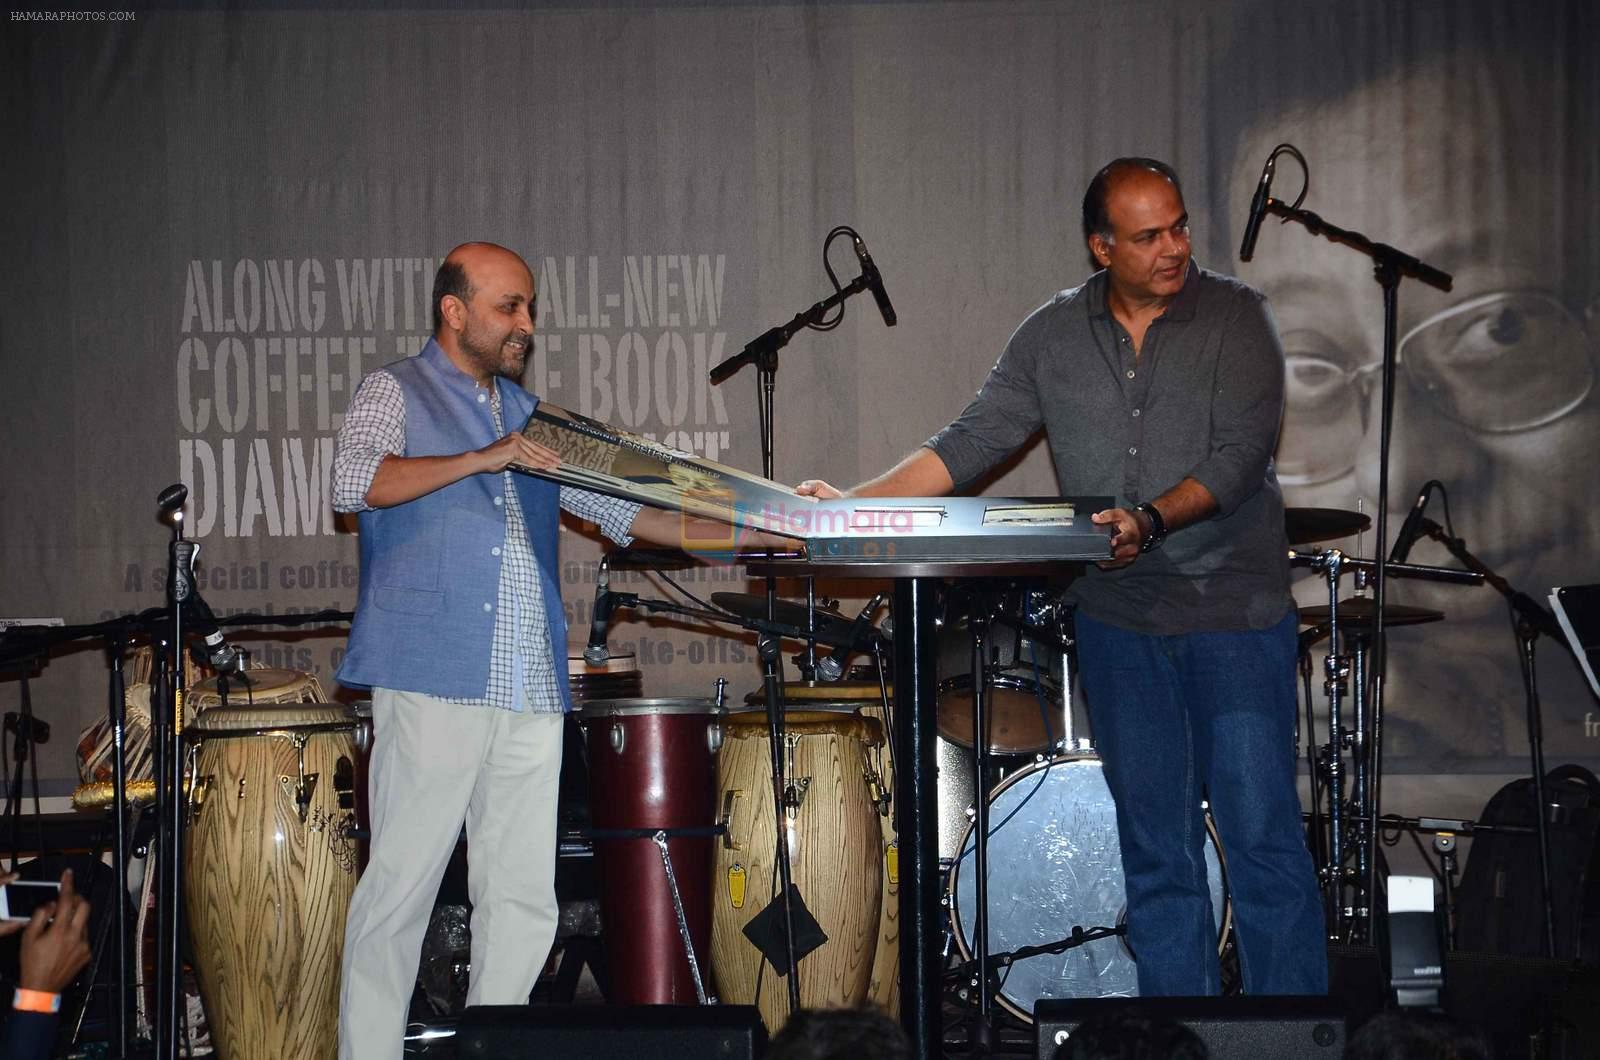 Ashutosh Gowariker at Pancham documentry launch in Mumbai on 23rd June 2015